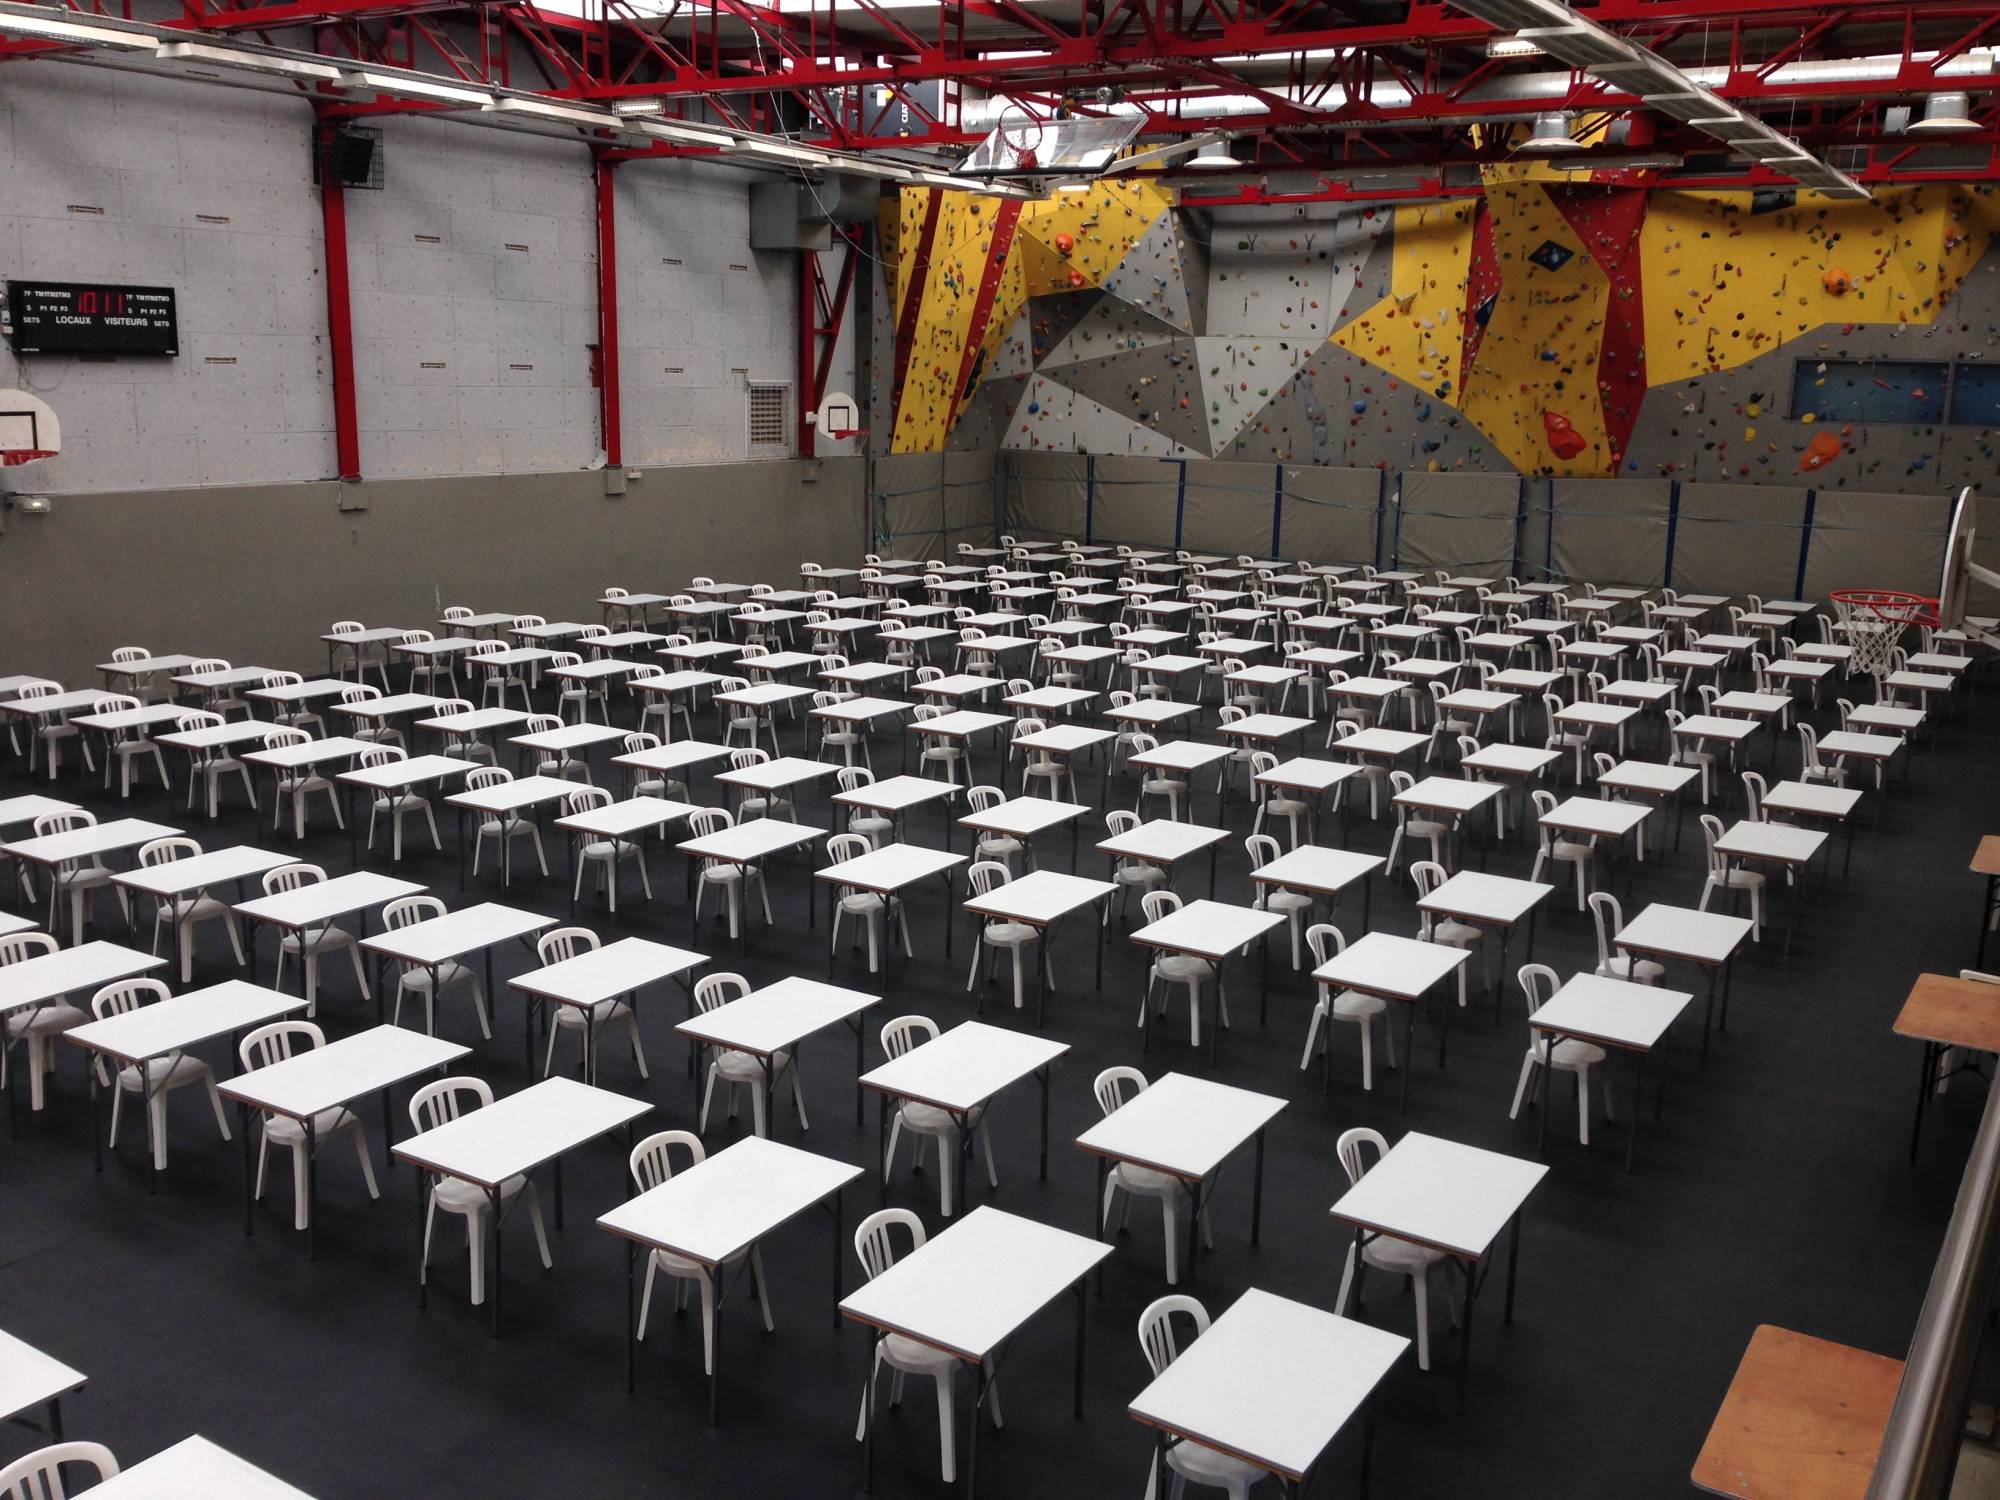 Location de tables et de chaises pour le concours des futurs ingénieurs de l’Ecole Centrale à Ecully